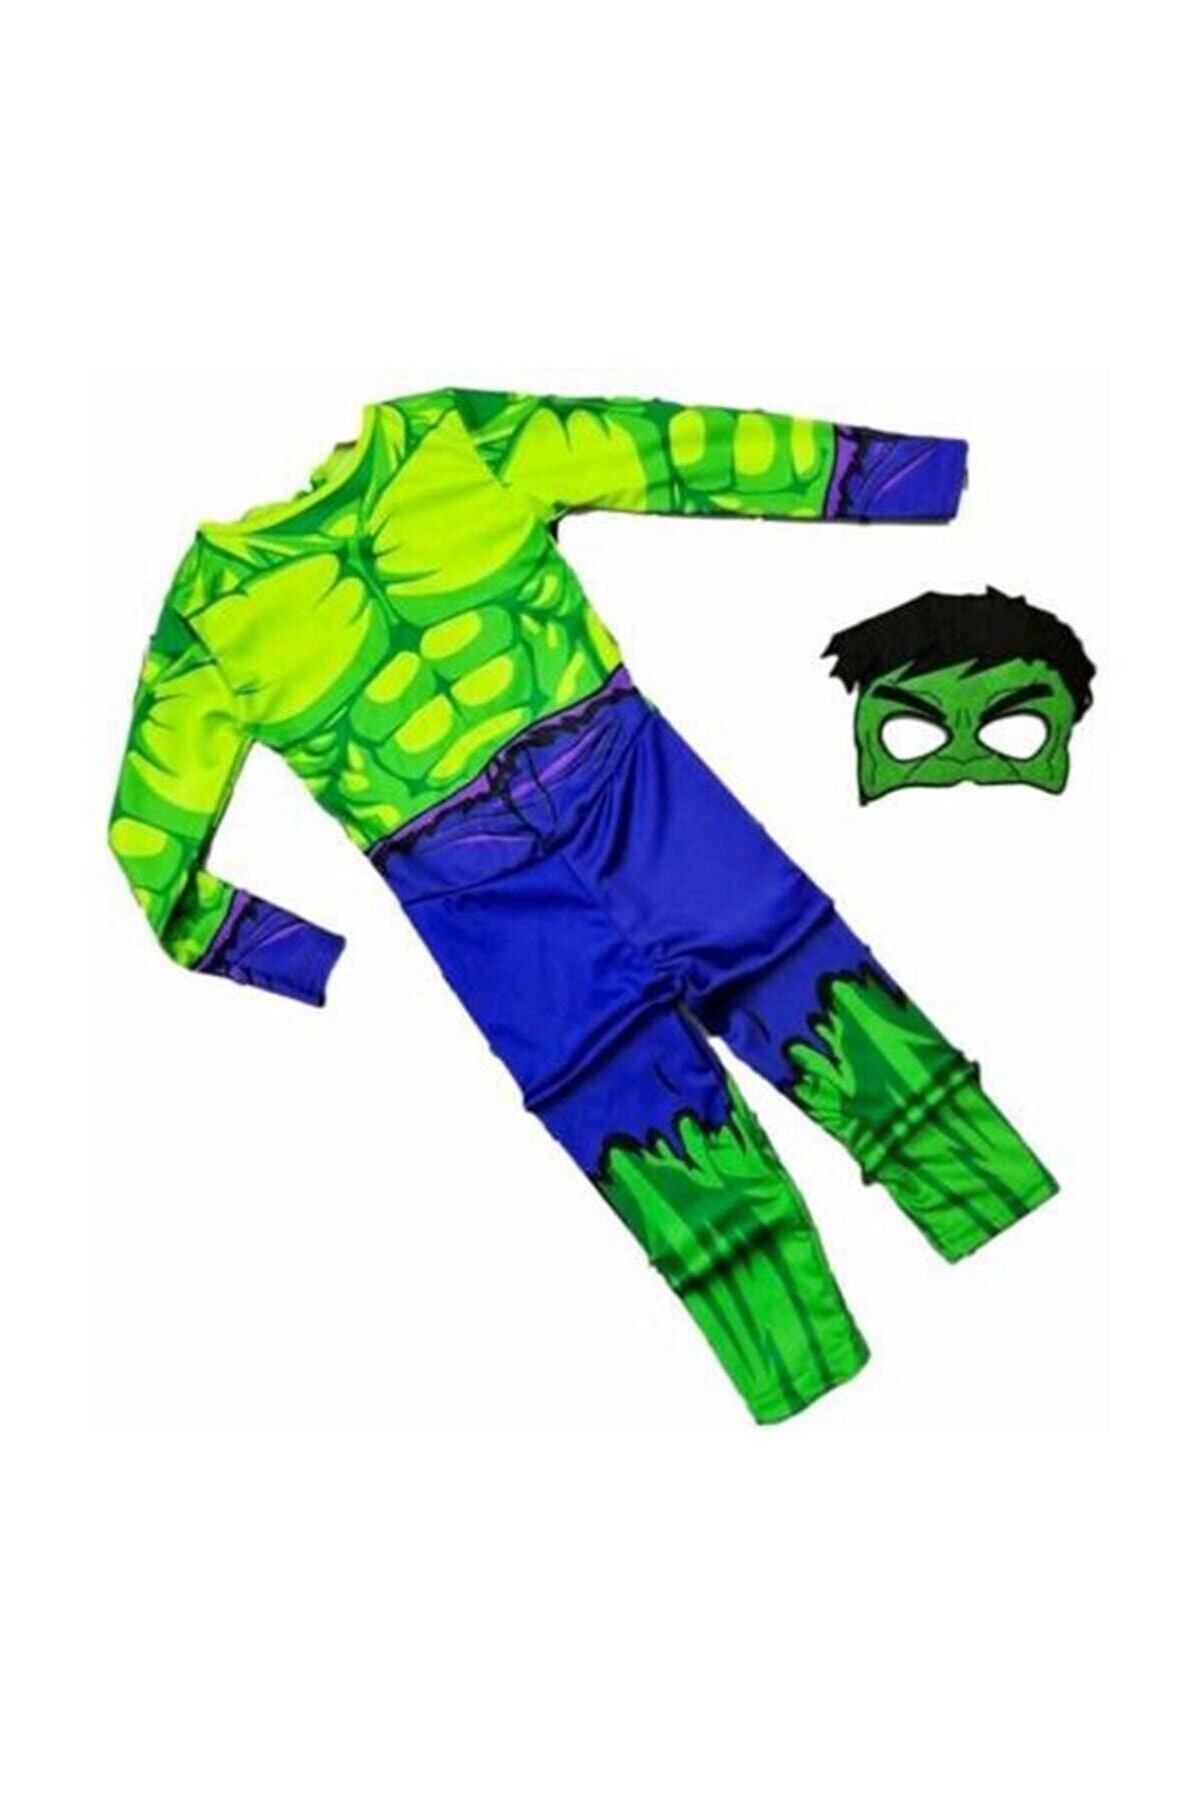 Tpm Hulk Çocuk Kostümü - Yeşil Dev Hulk Adam Çocuk Kostümü